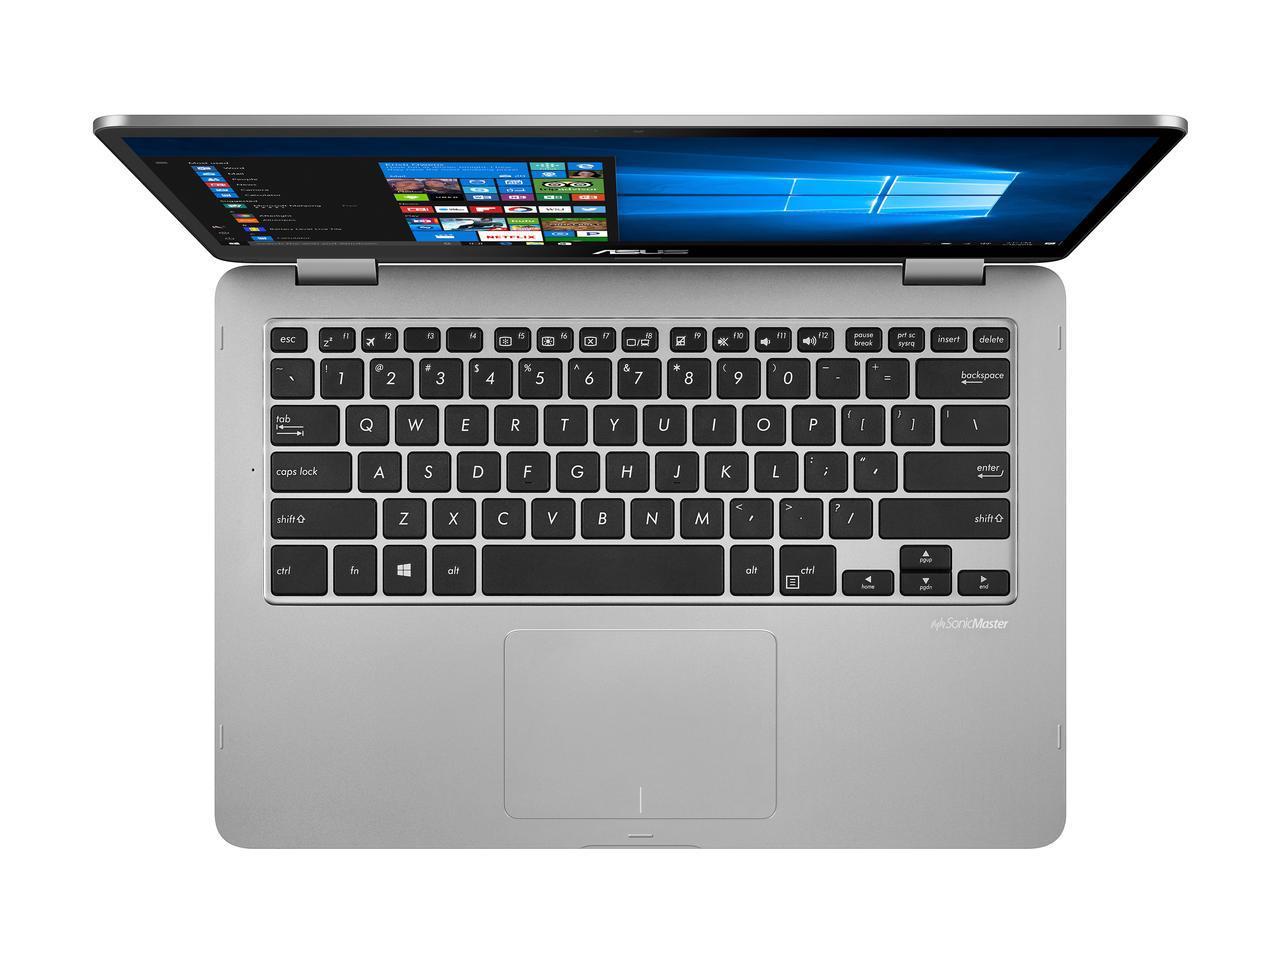 Asus VivoBook Flip 14 Series - Notebookcheck.net External Reviews